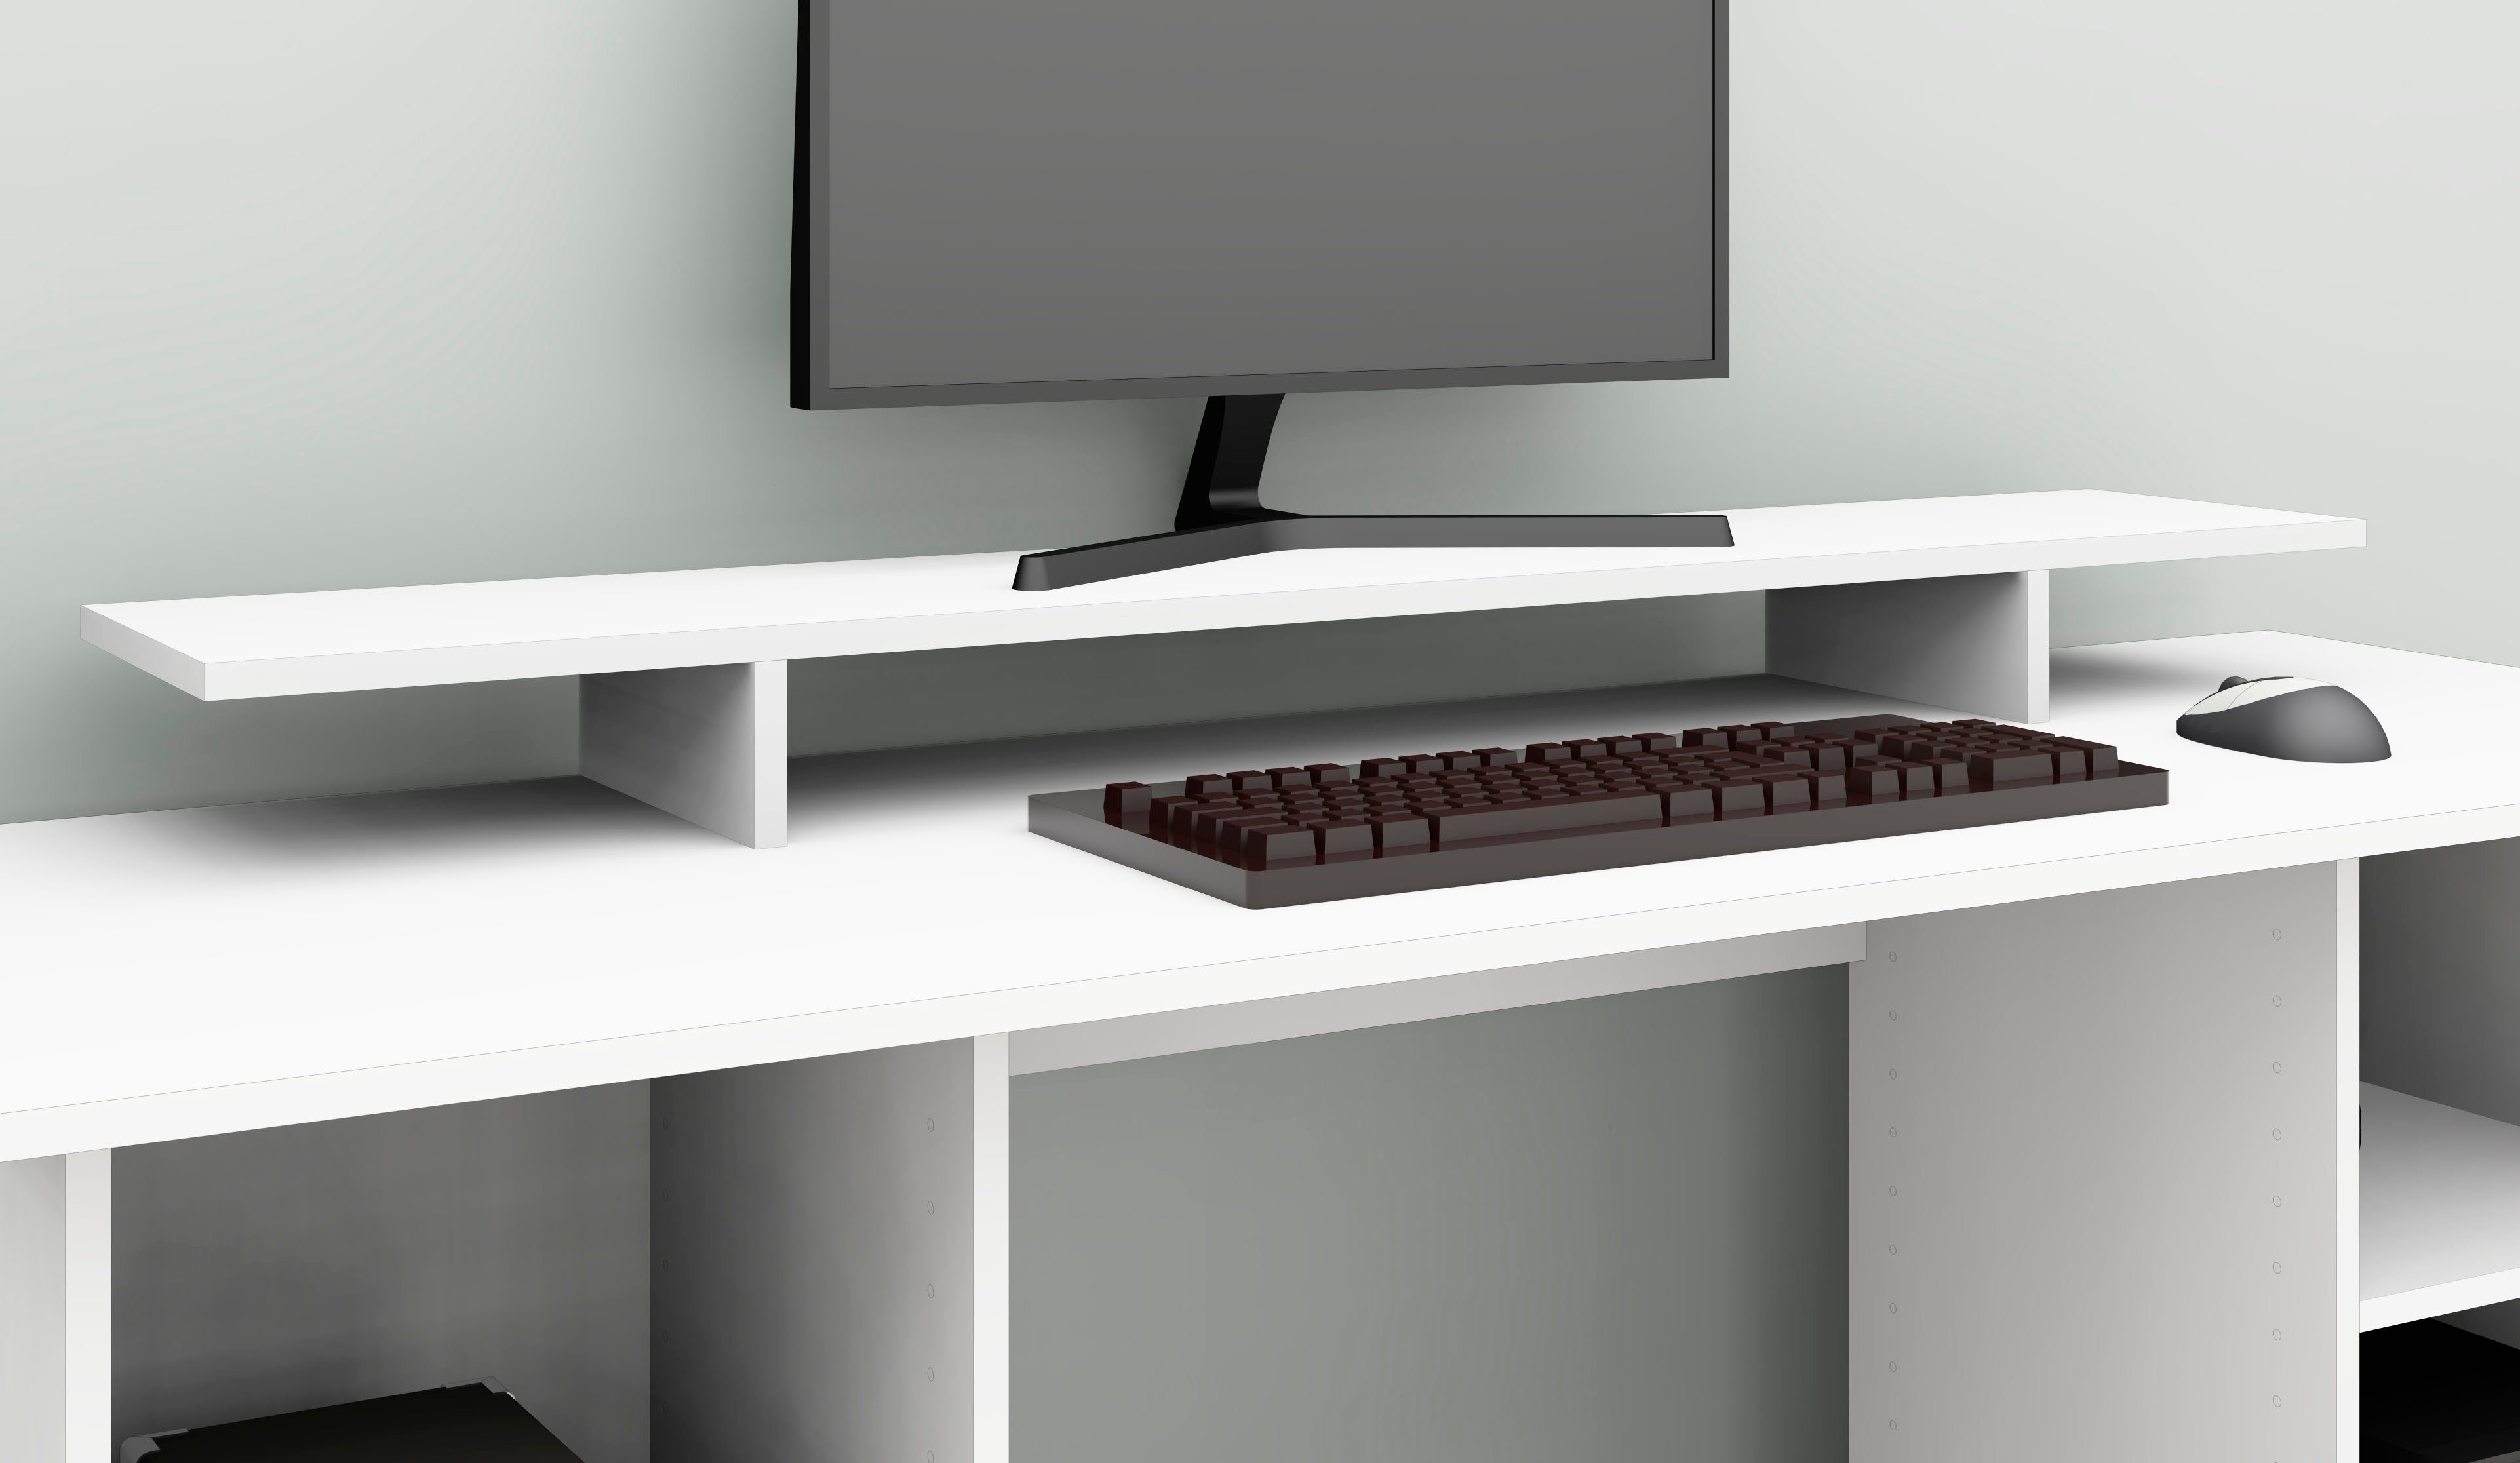 weiß-matt Design, modernen Bildschirmerhöhung Kai, Schreibtischaufsatz Monitorständer, Made Germany im in Möbel borchardt